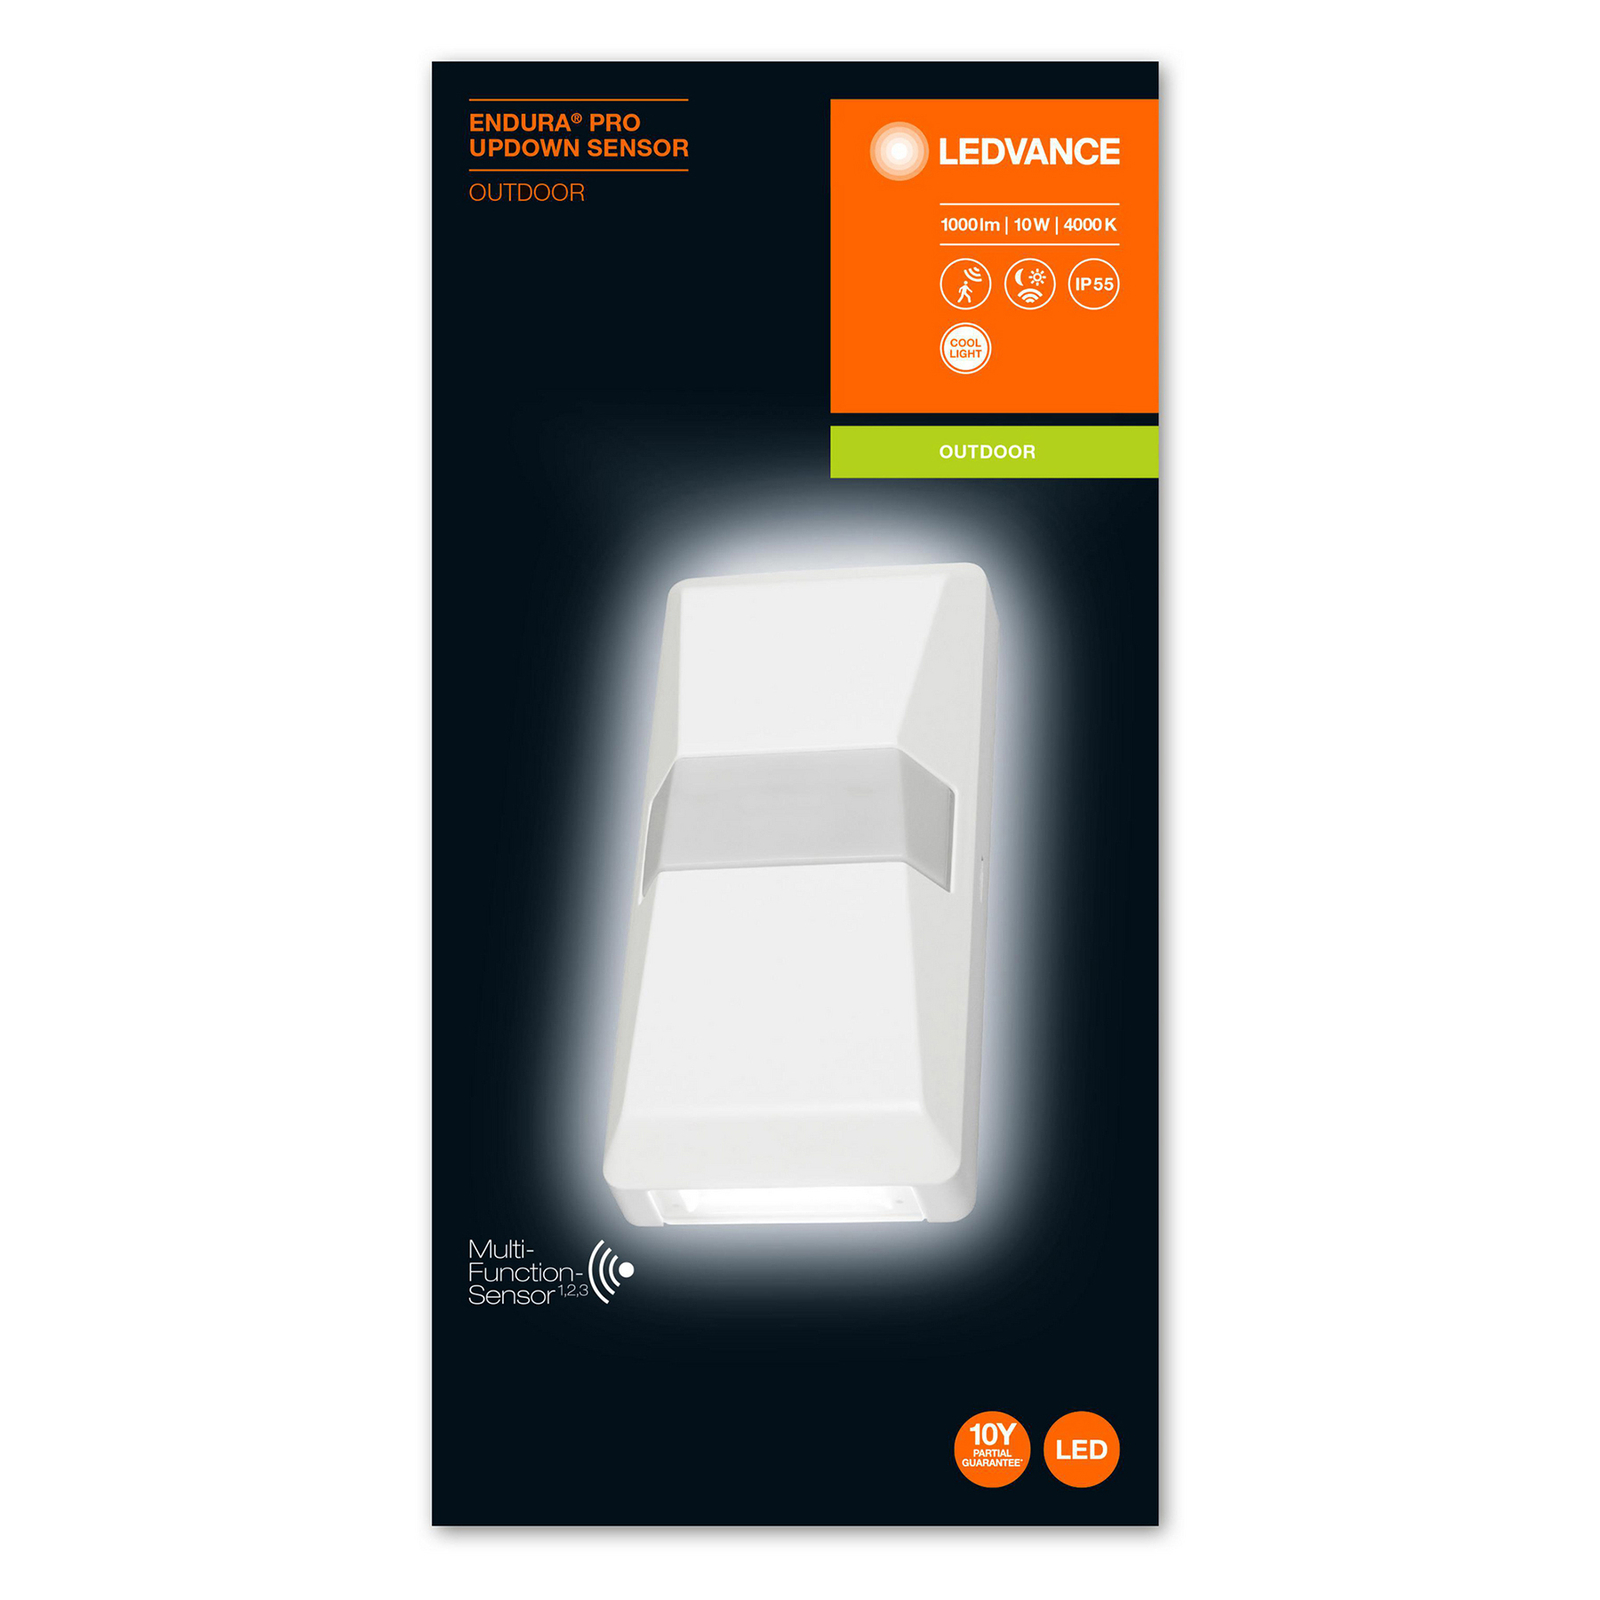 LEDVANCE Endura Pro UpDown Sensor hvid